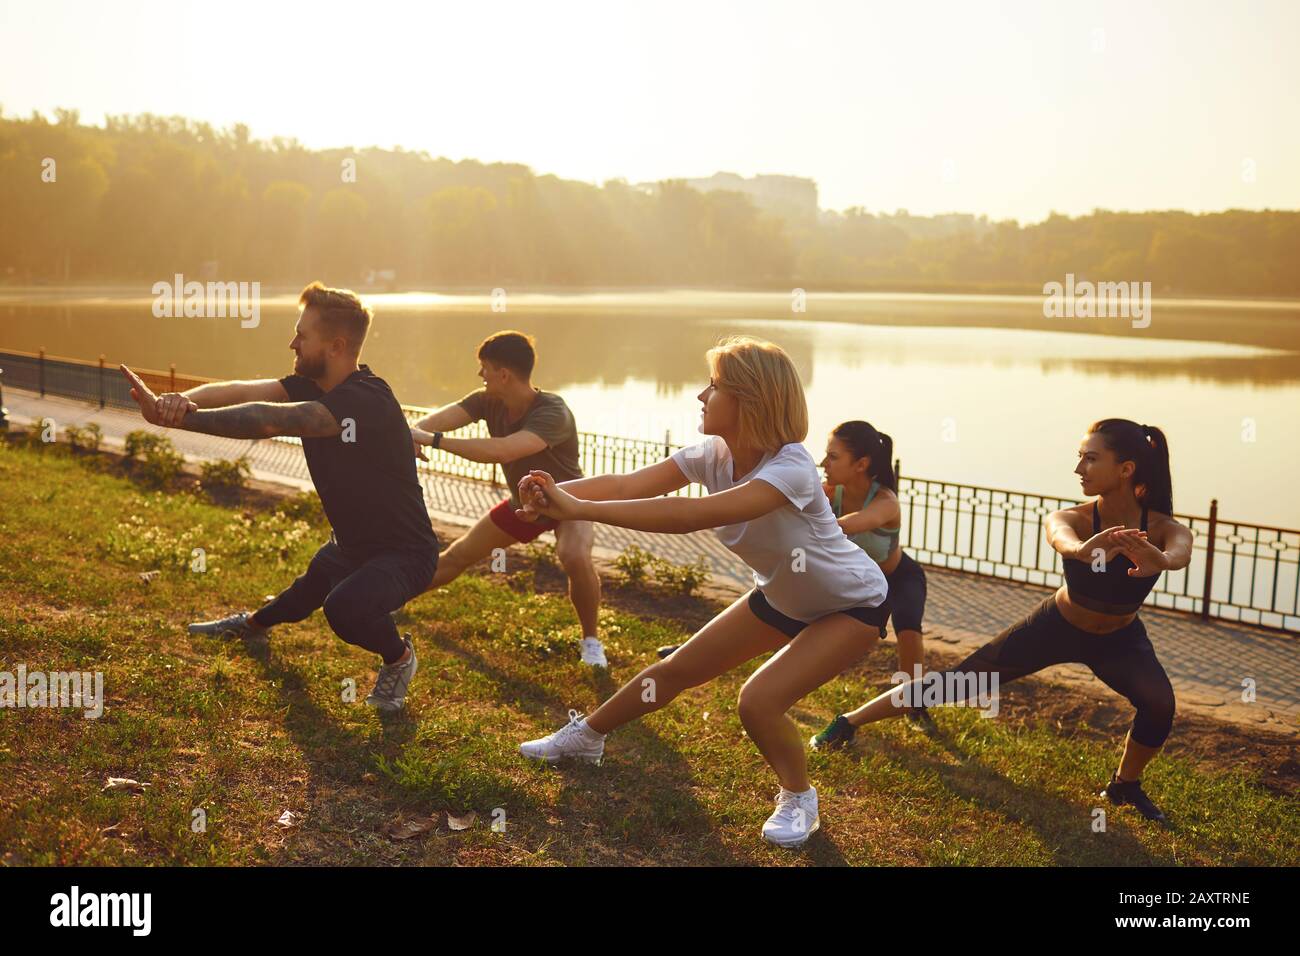 Gruppe junger Menschen bei einer Trainingseinheit in einem Park Stockfoto